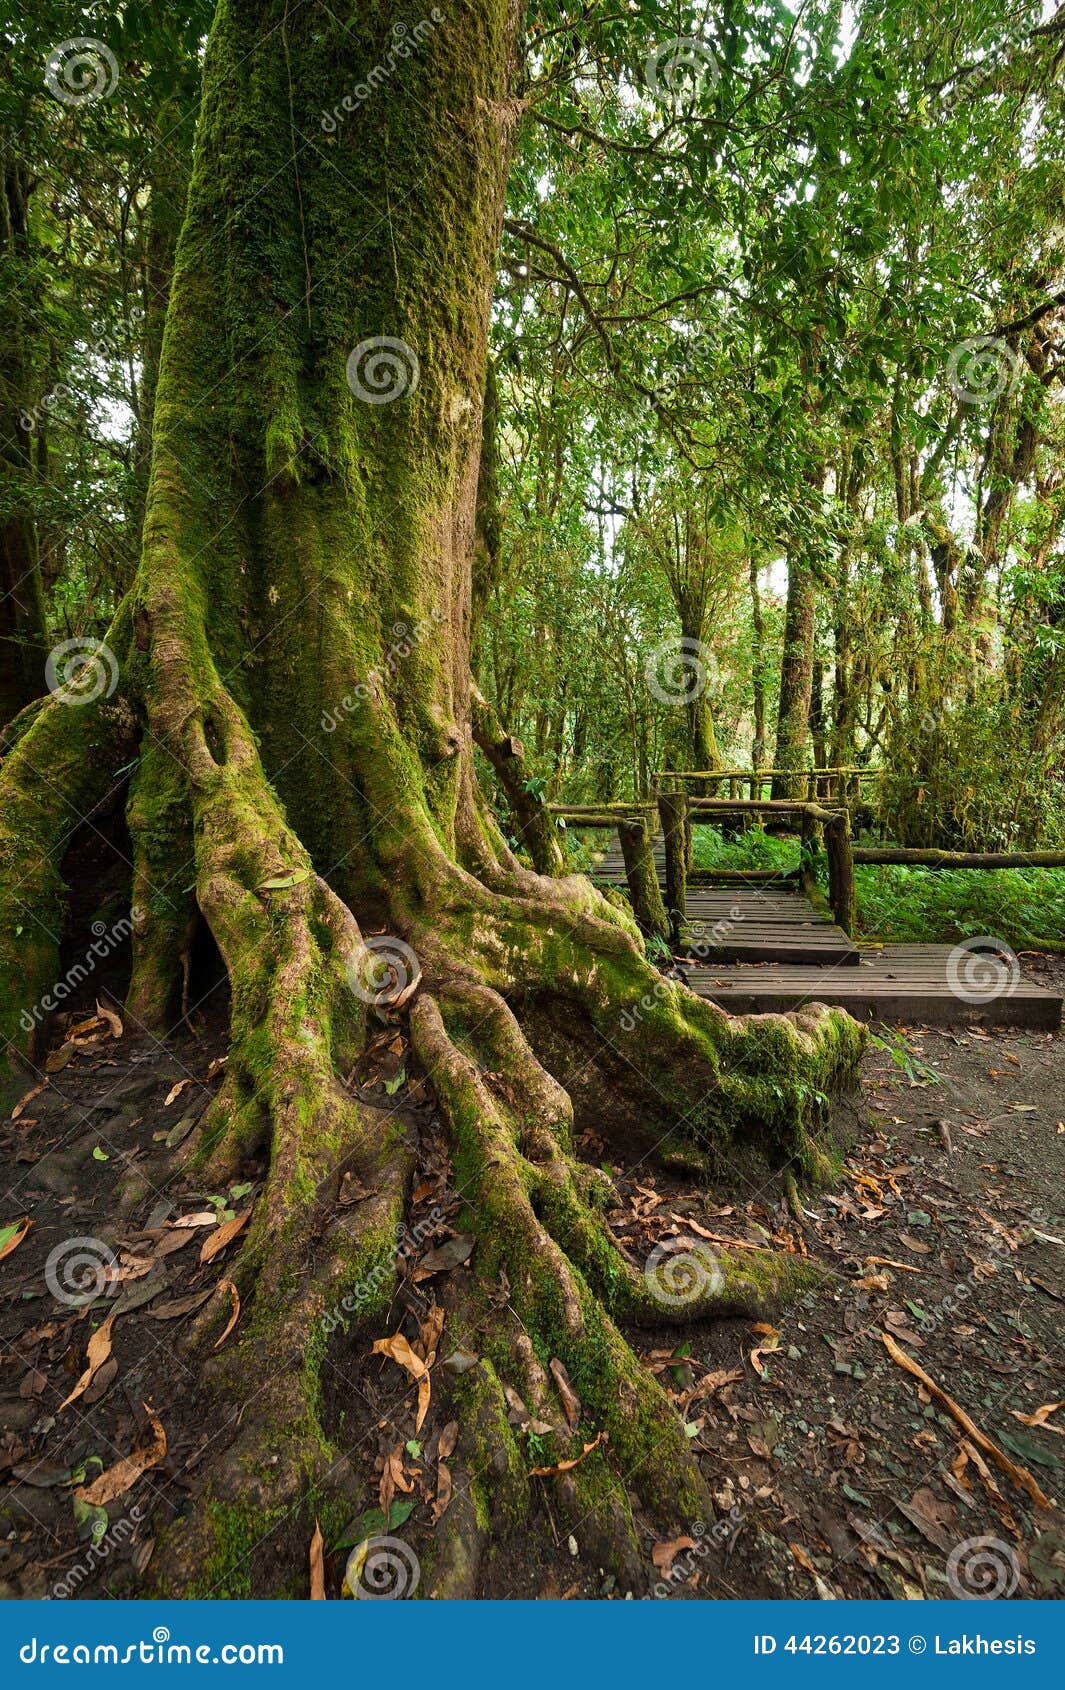 photo stock horizontal de jungle le parc extrieur avec le grand arbre s enracine la fort tropicale tropicale image